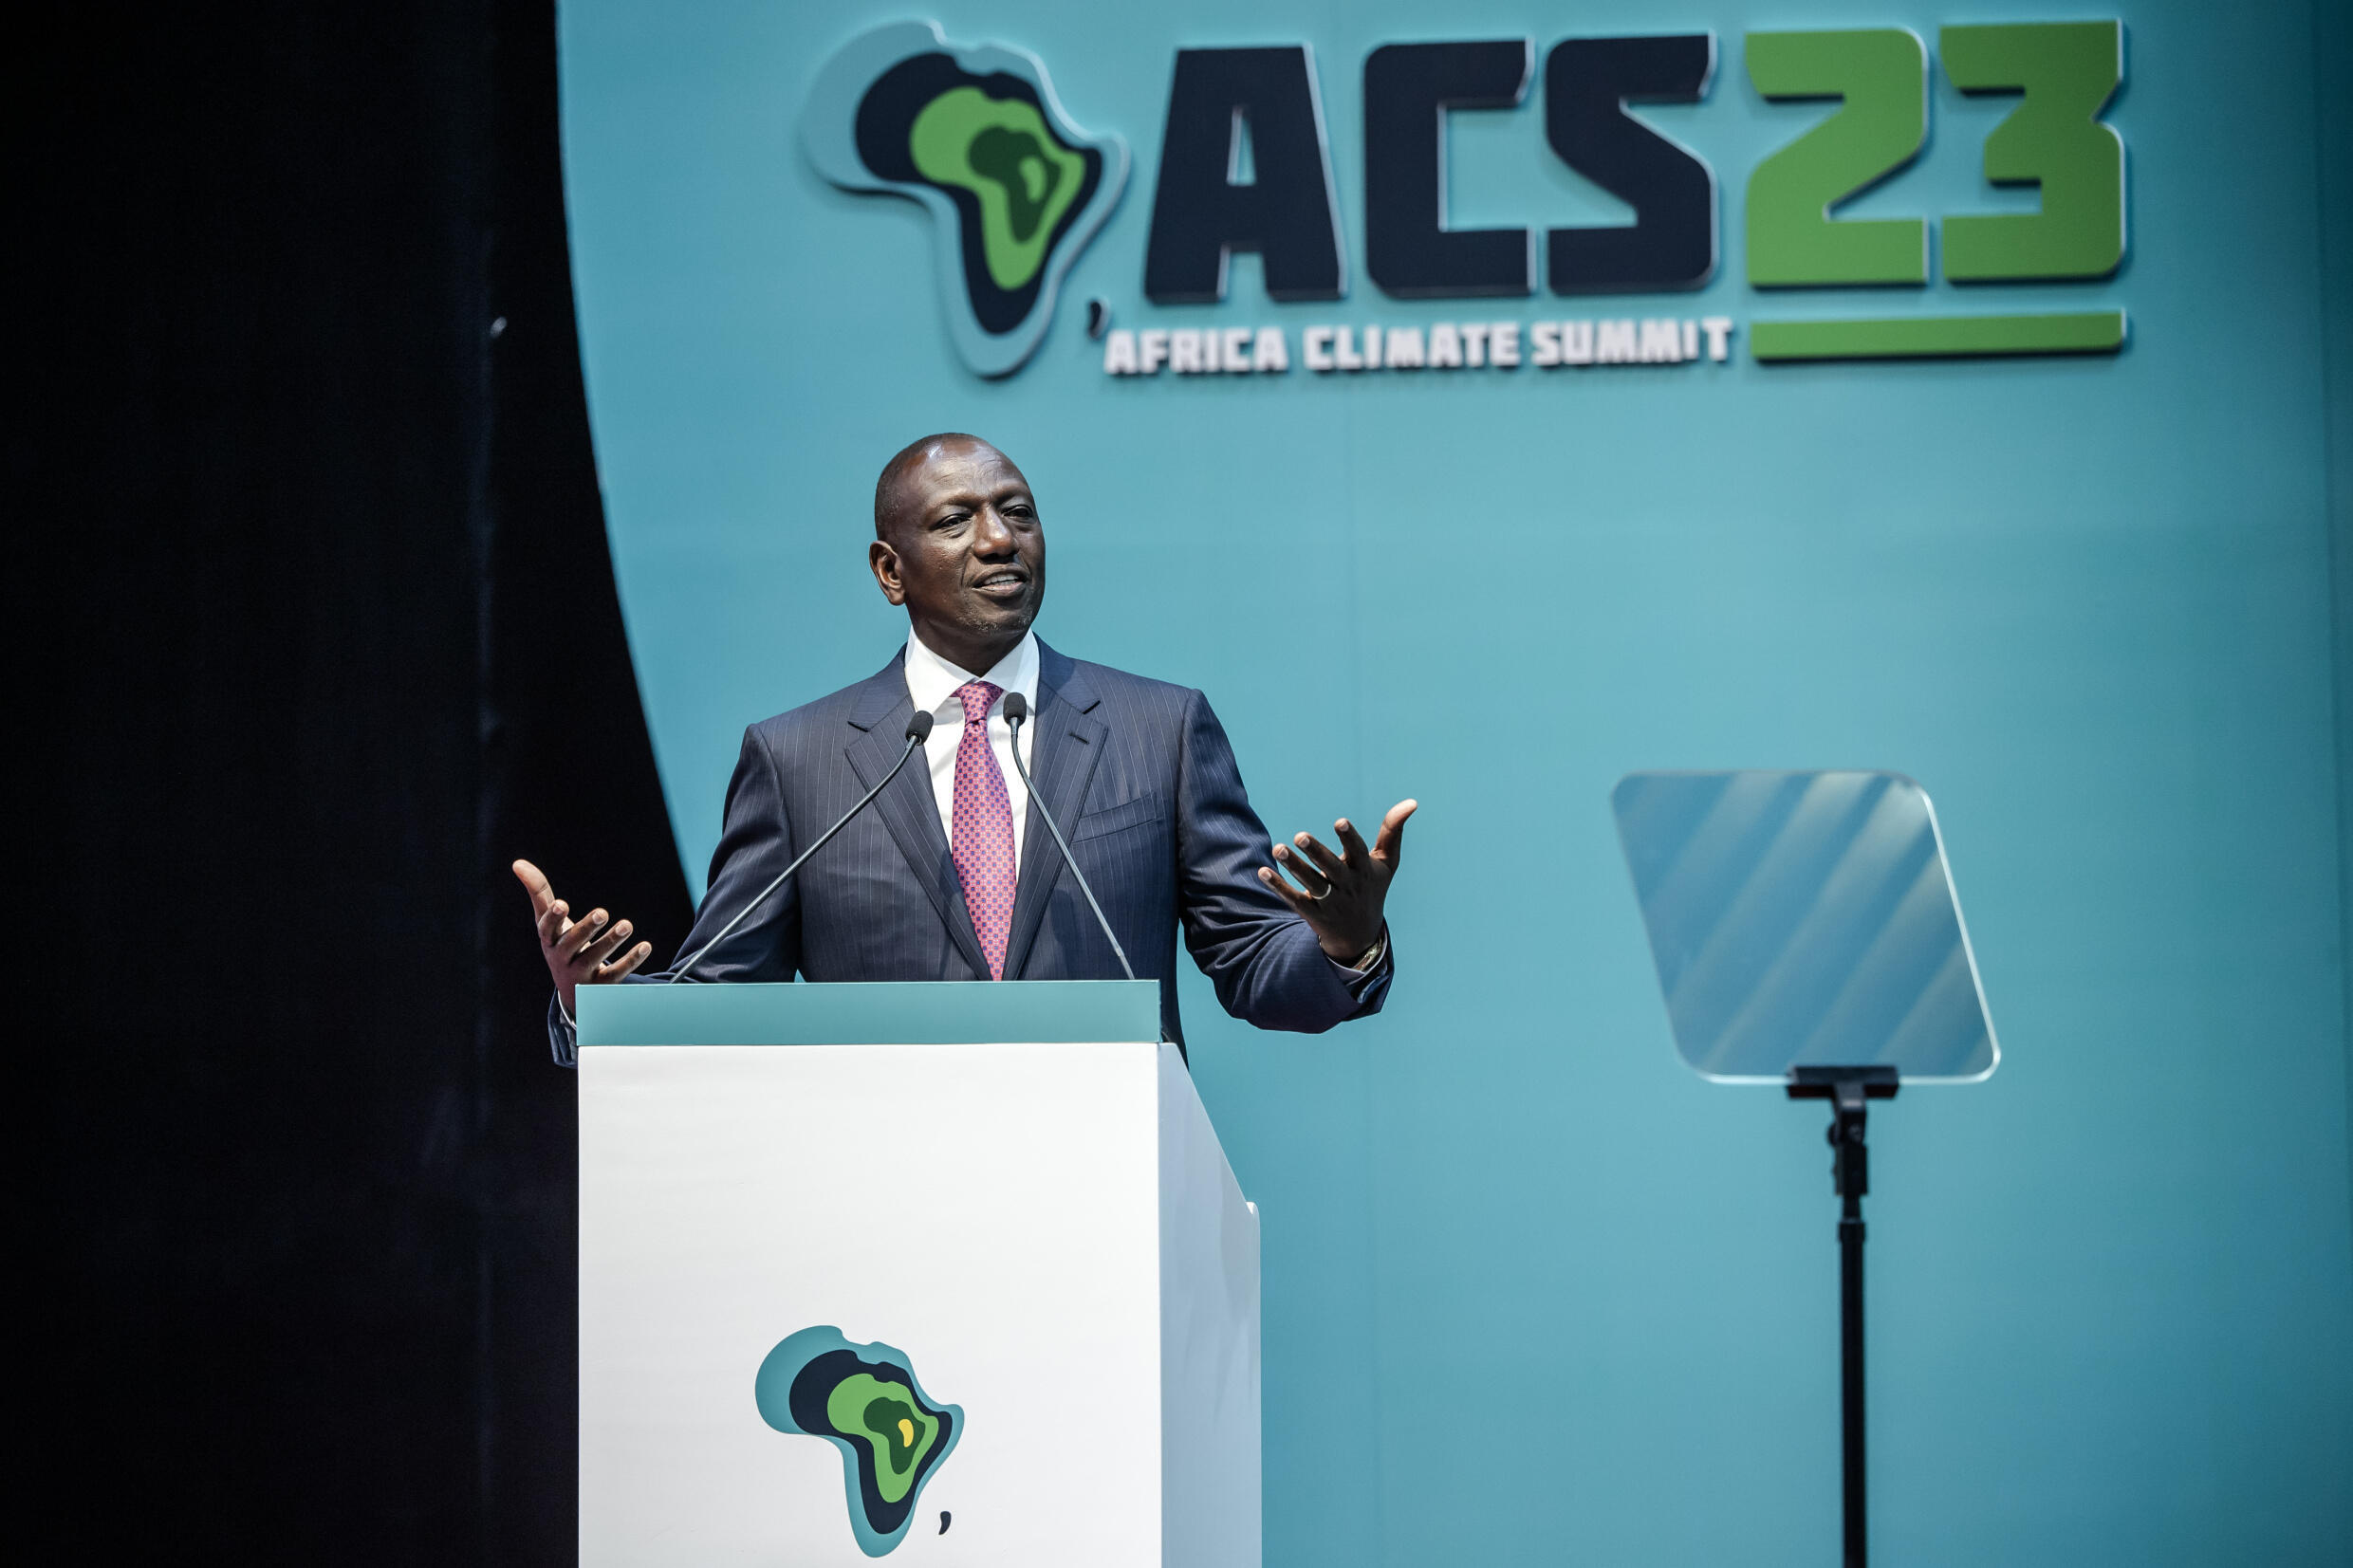 Der kenianische Präsident William Ruto sagte, es seien Billionen von Dollar an „grünen Investitionsmöglichkeiten“ erforderlich